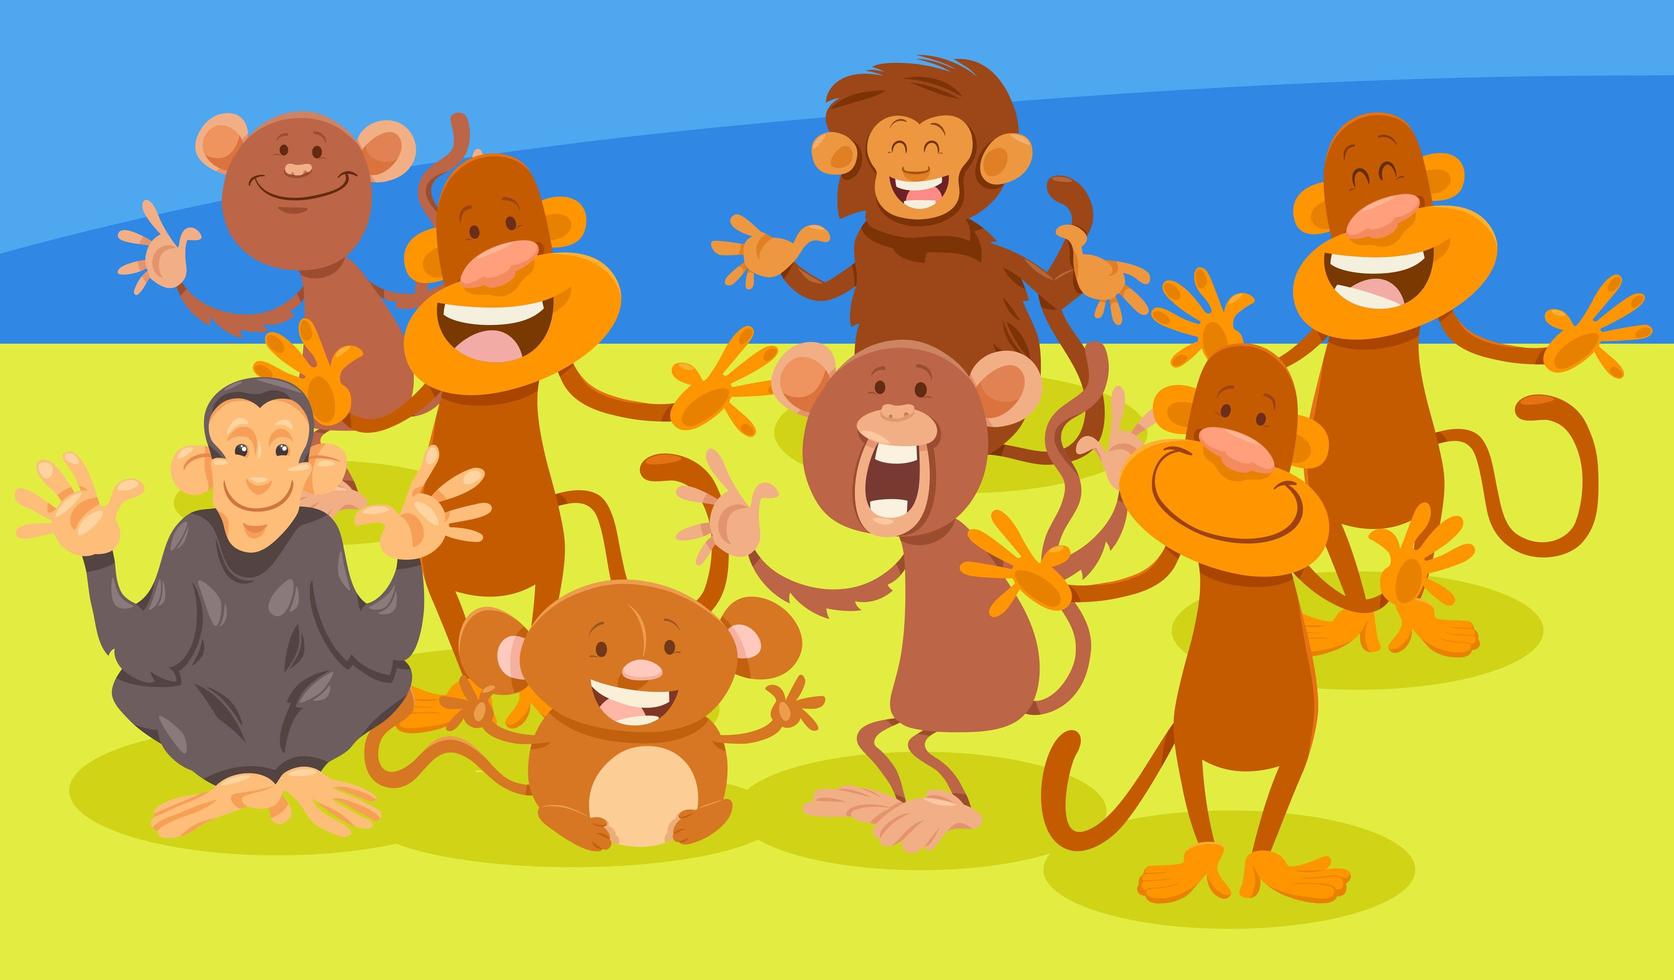 gruppo di personaggi animali scimmie dei cartoni animati vettore